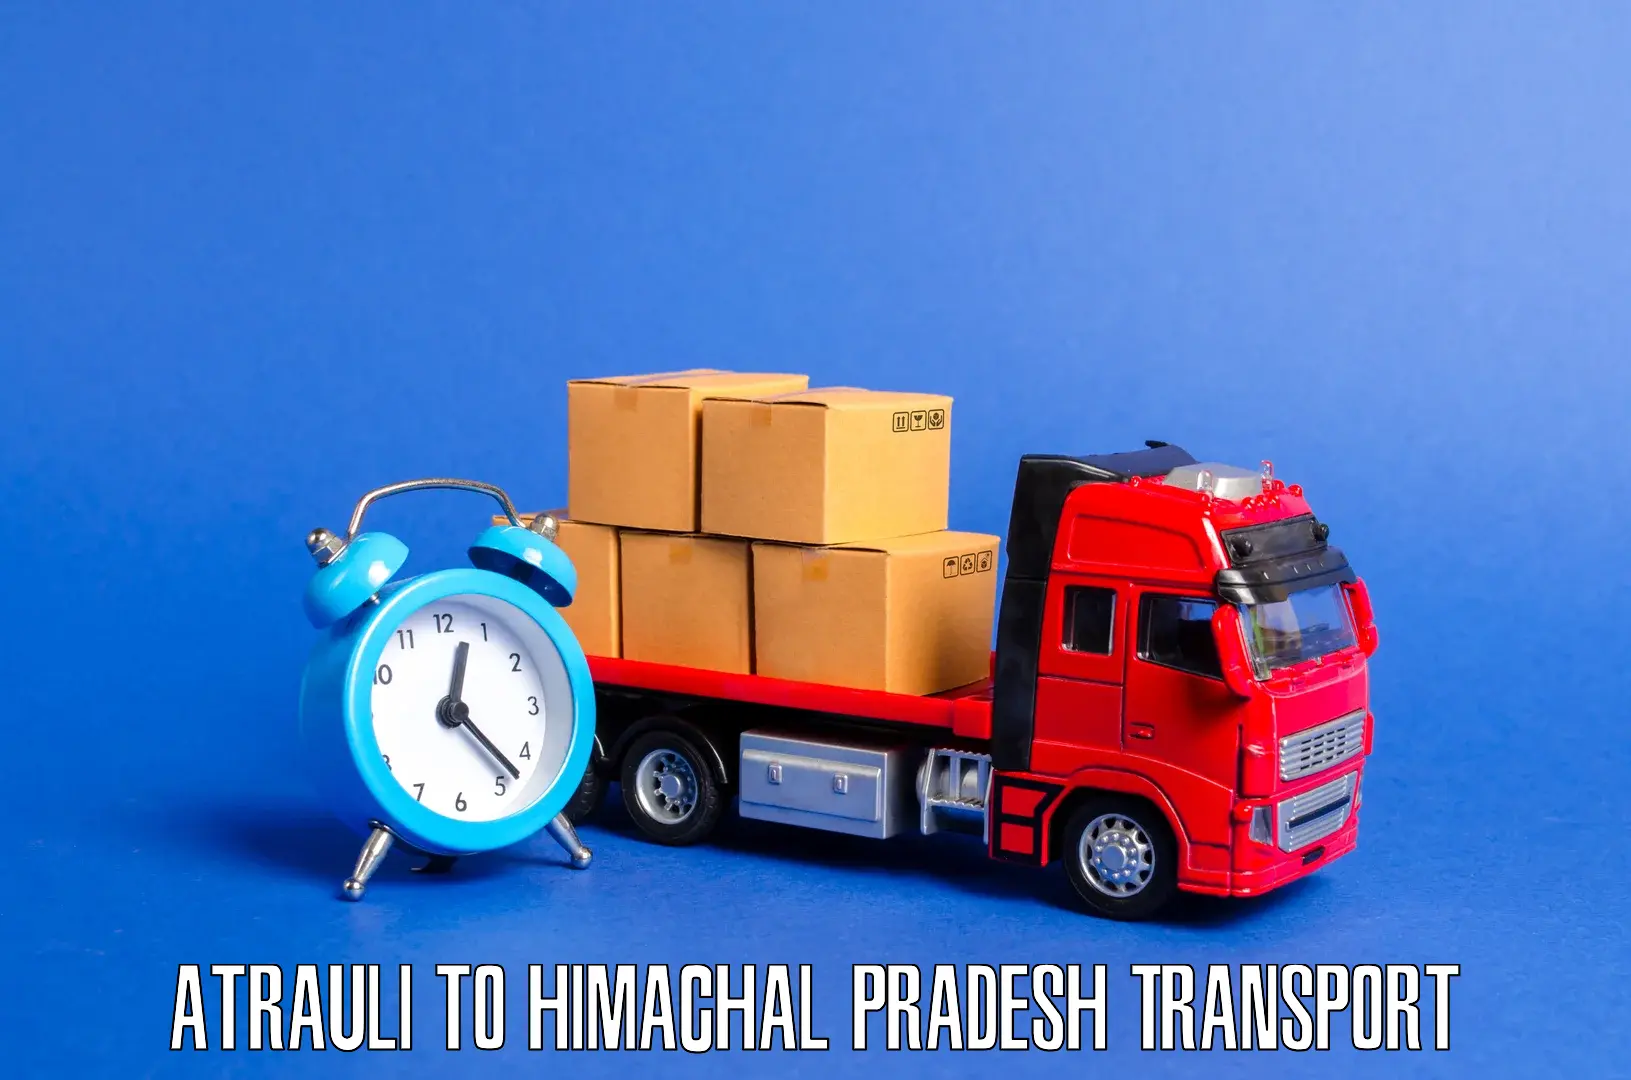 Nearby transport service Atrauli to Una Himachal Pradesh